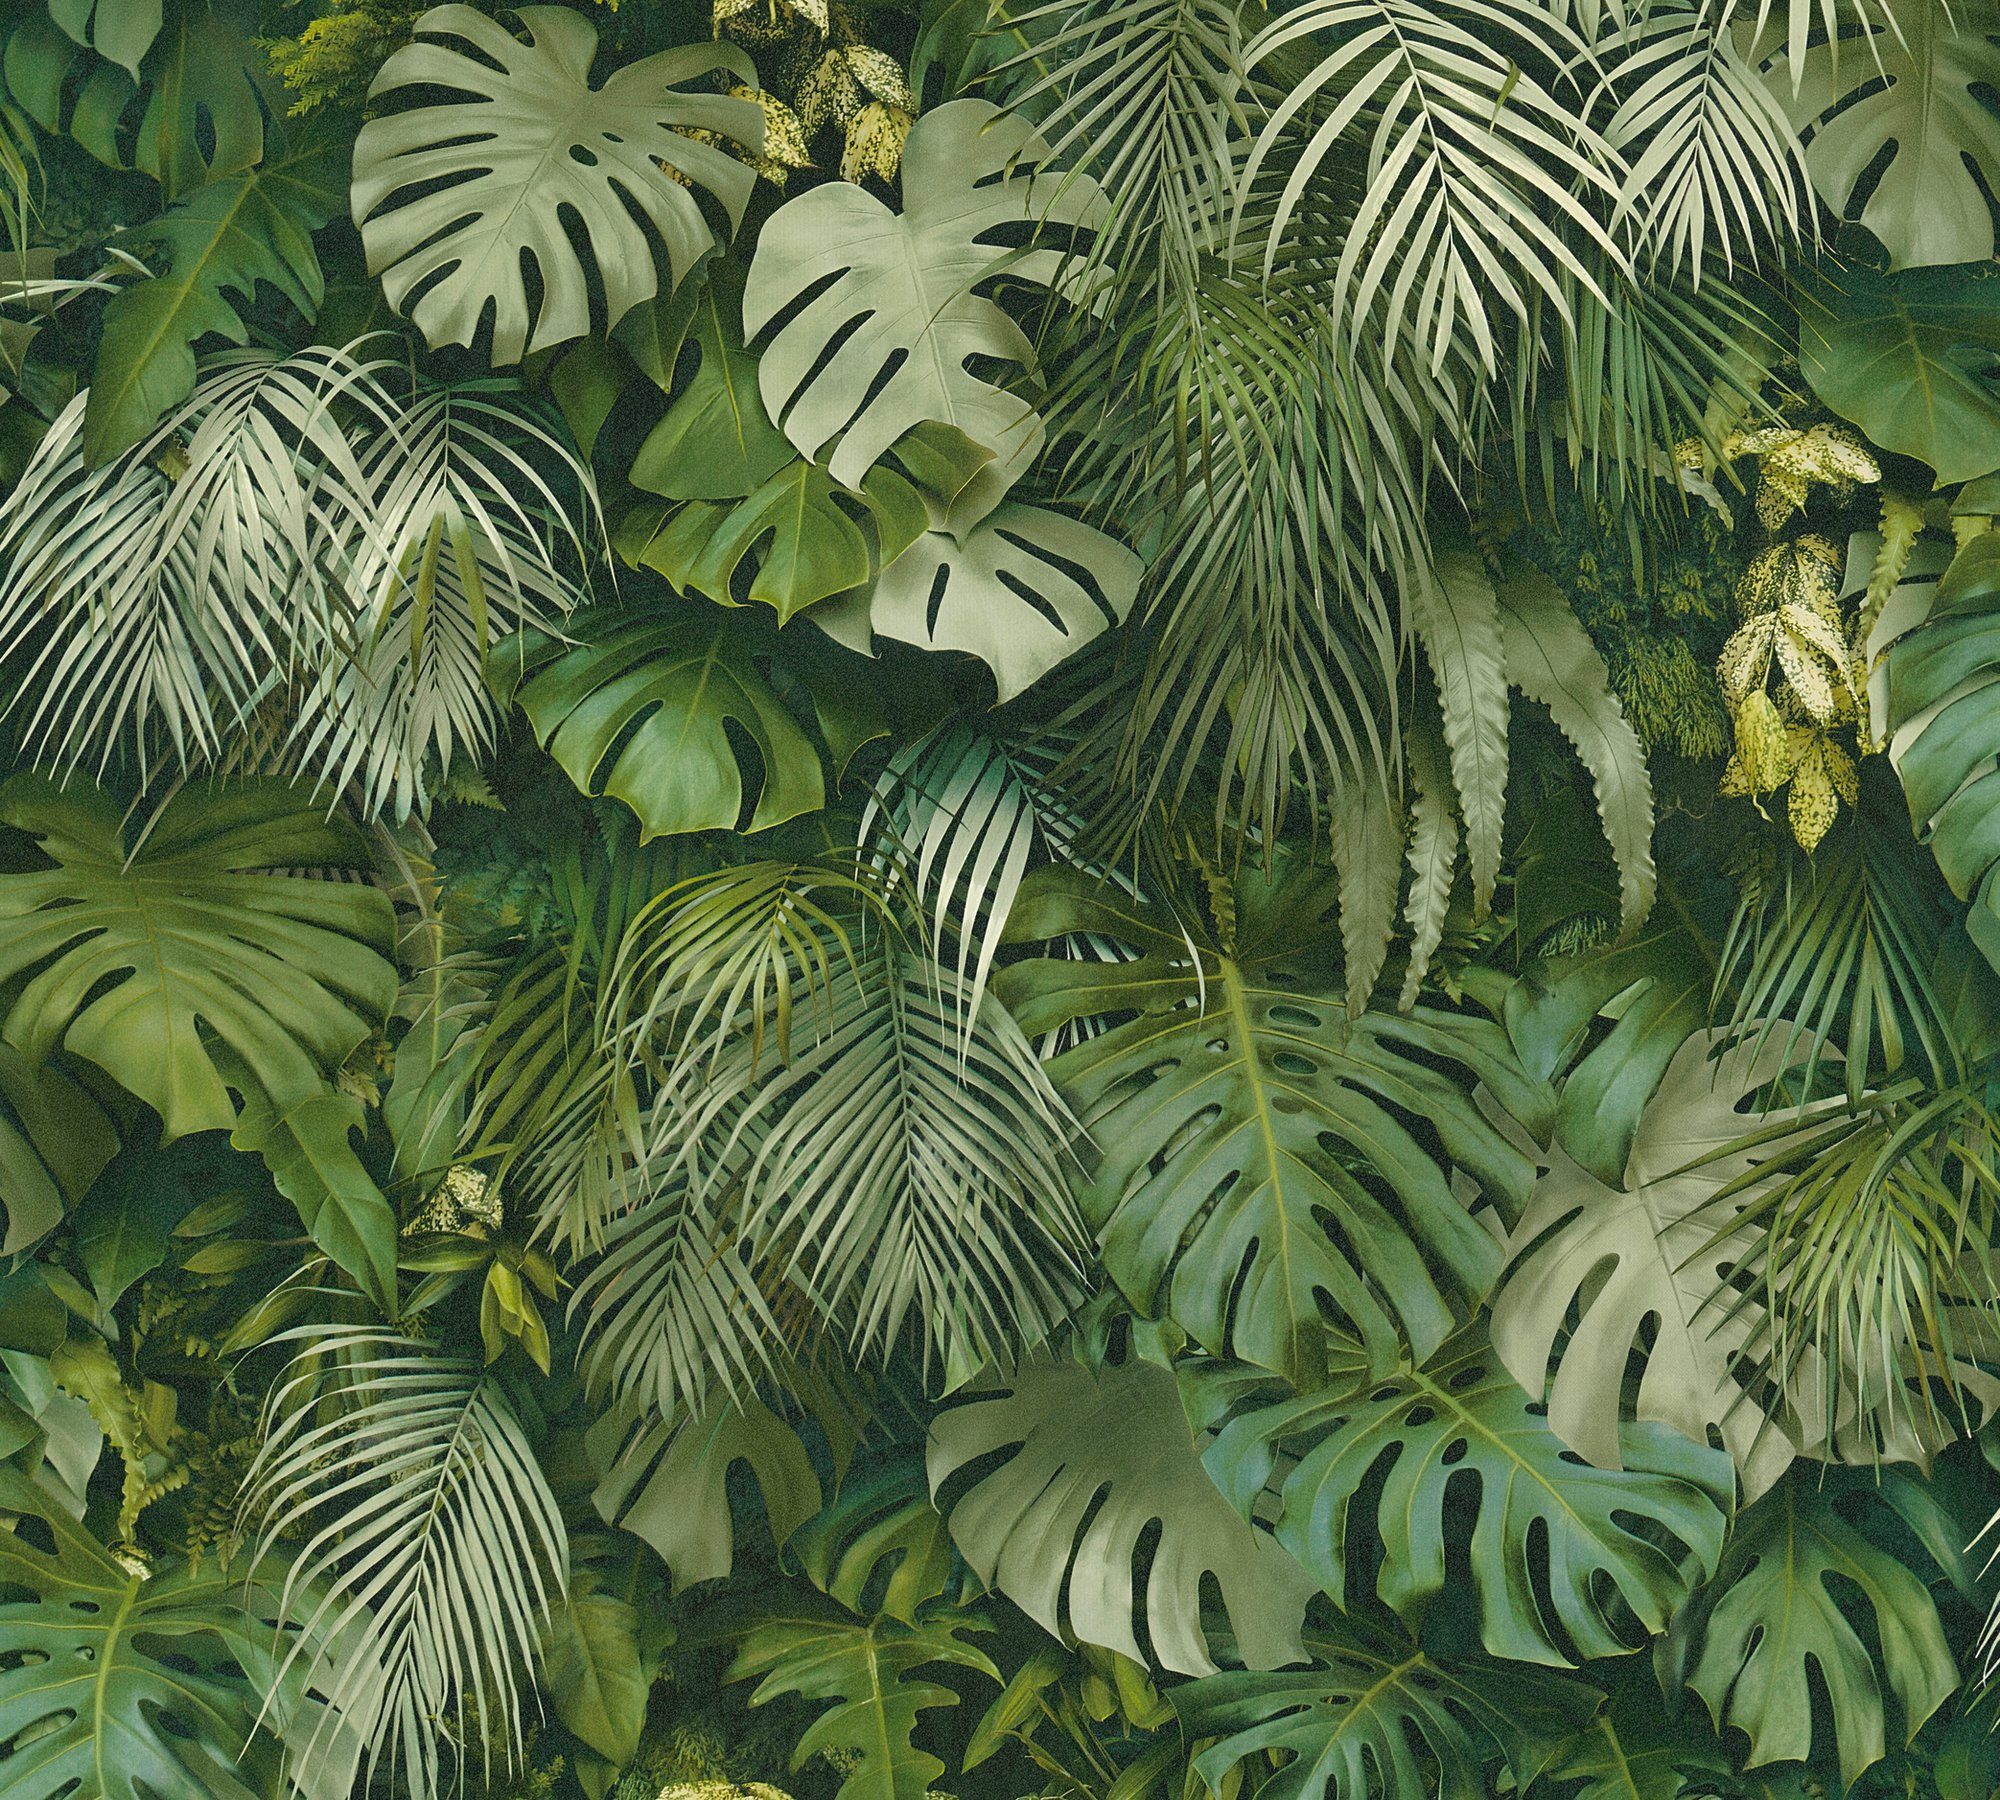 Tapete Dschungel Greenery Palmenprint mit grün Optik, in Création Palmentapete Vliestapete Dschungel floral, A.S.